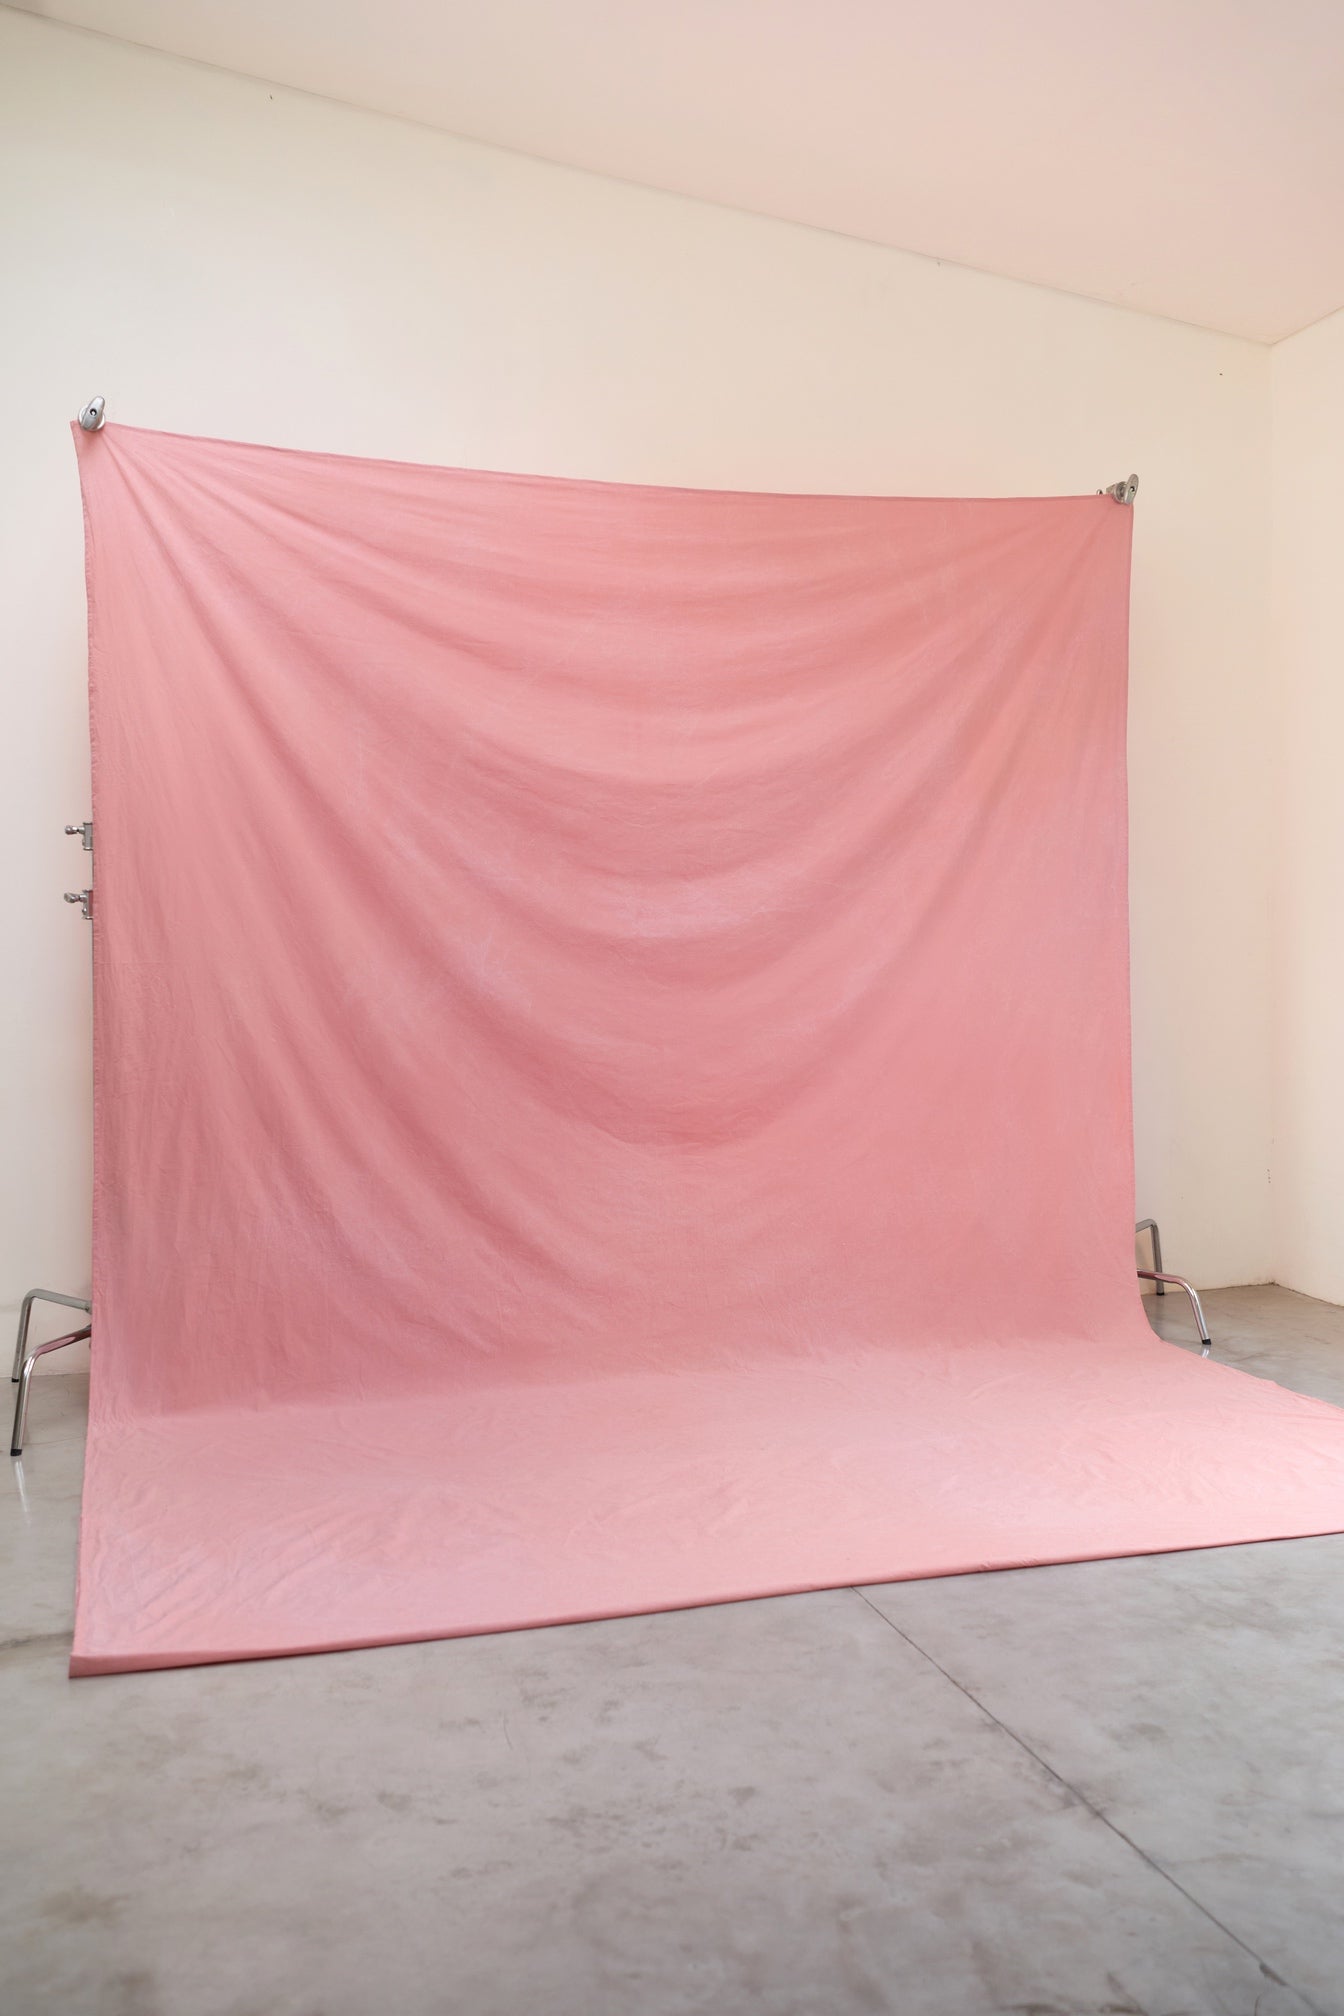 [3x3.75m] Cotton Backdrop Blush Pink